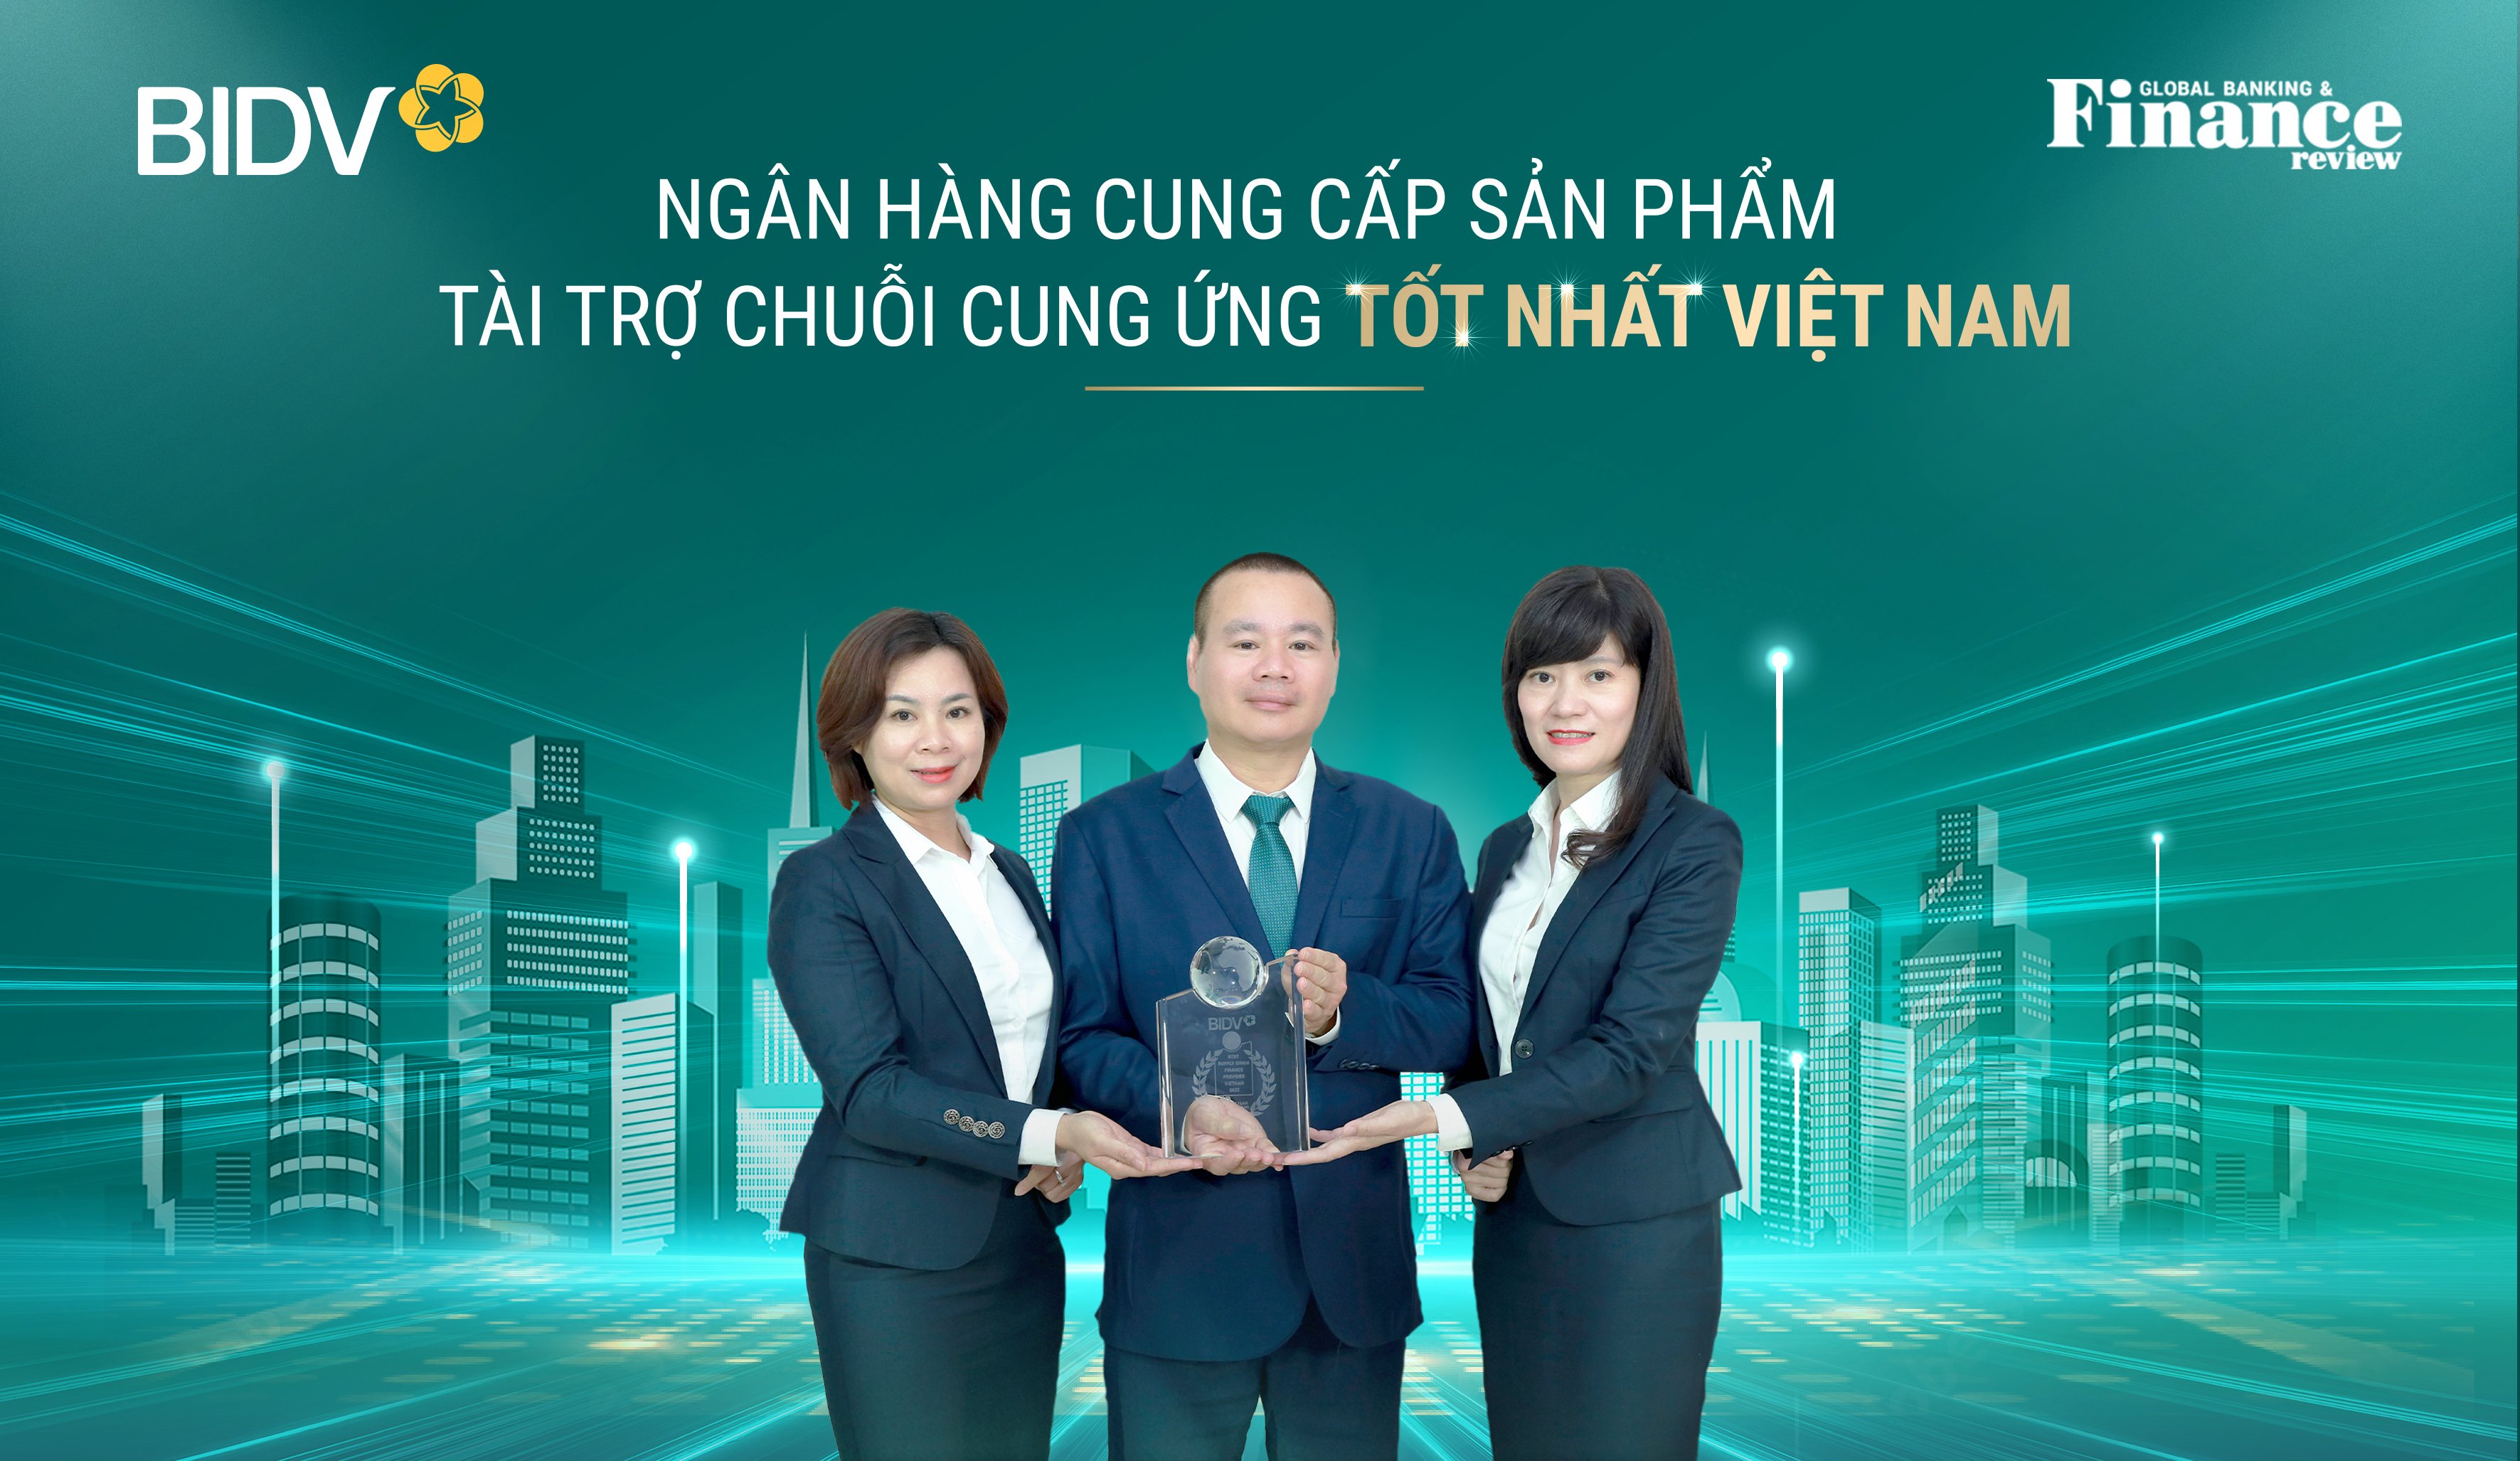 BIDV là ngân hàng cung cấp sản phẩm Tài trợ chuỗi cung ứng tốt nhất Việt Nam năm 2022.